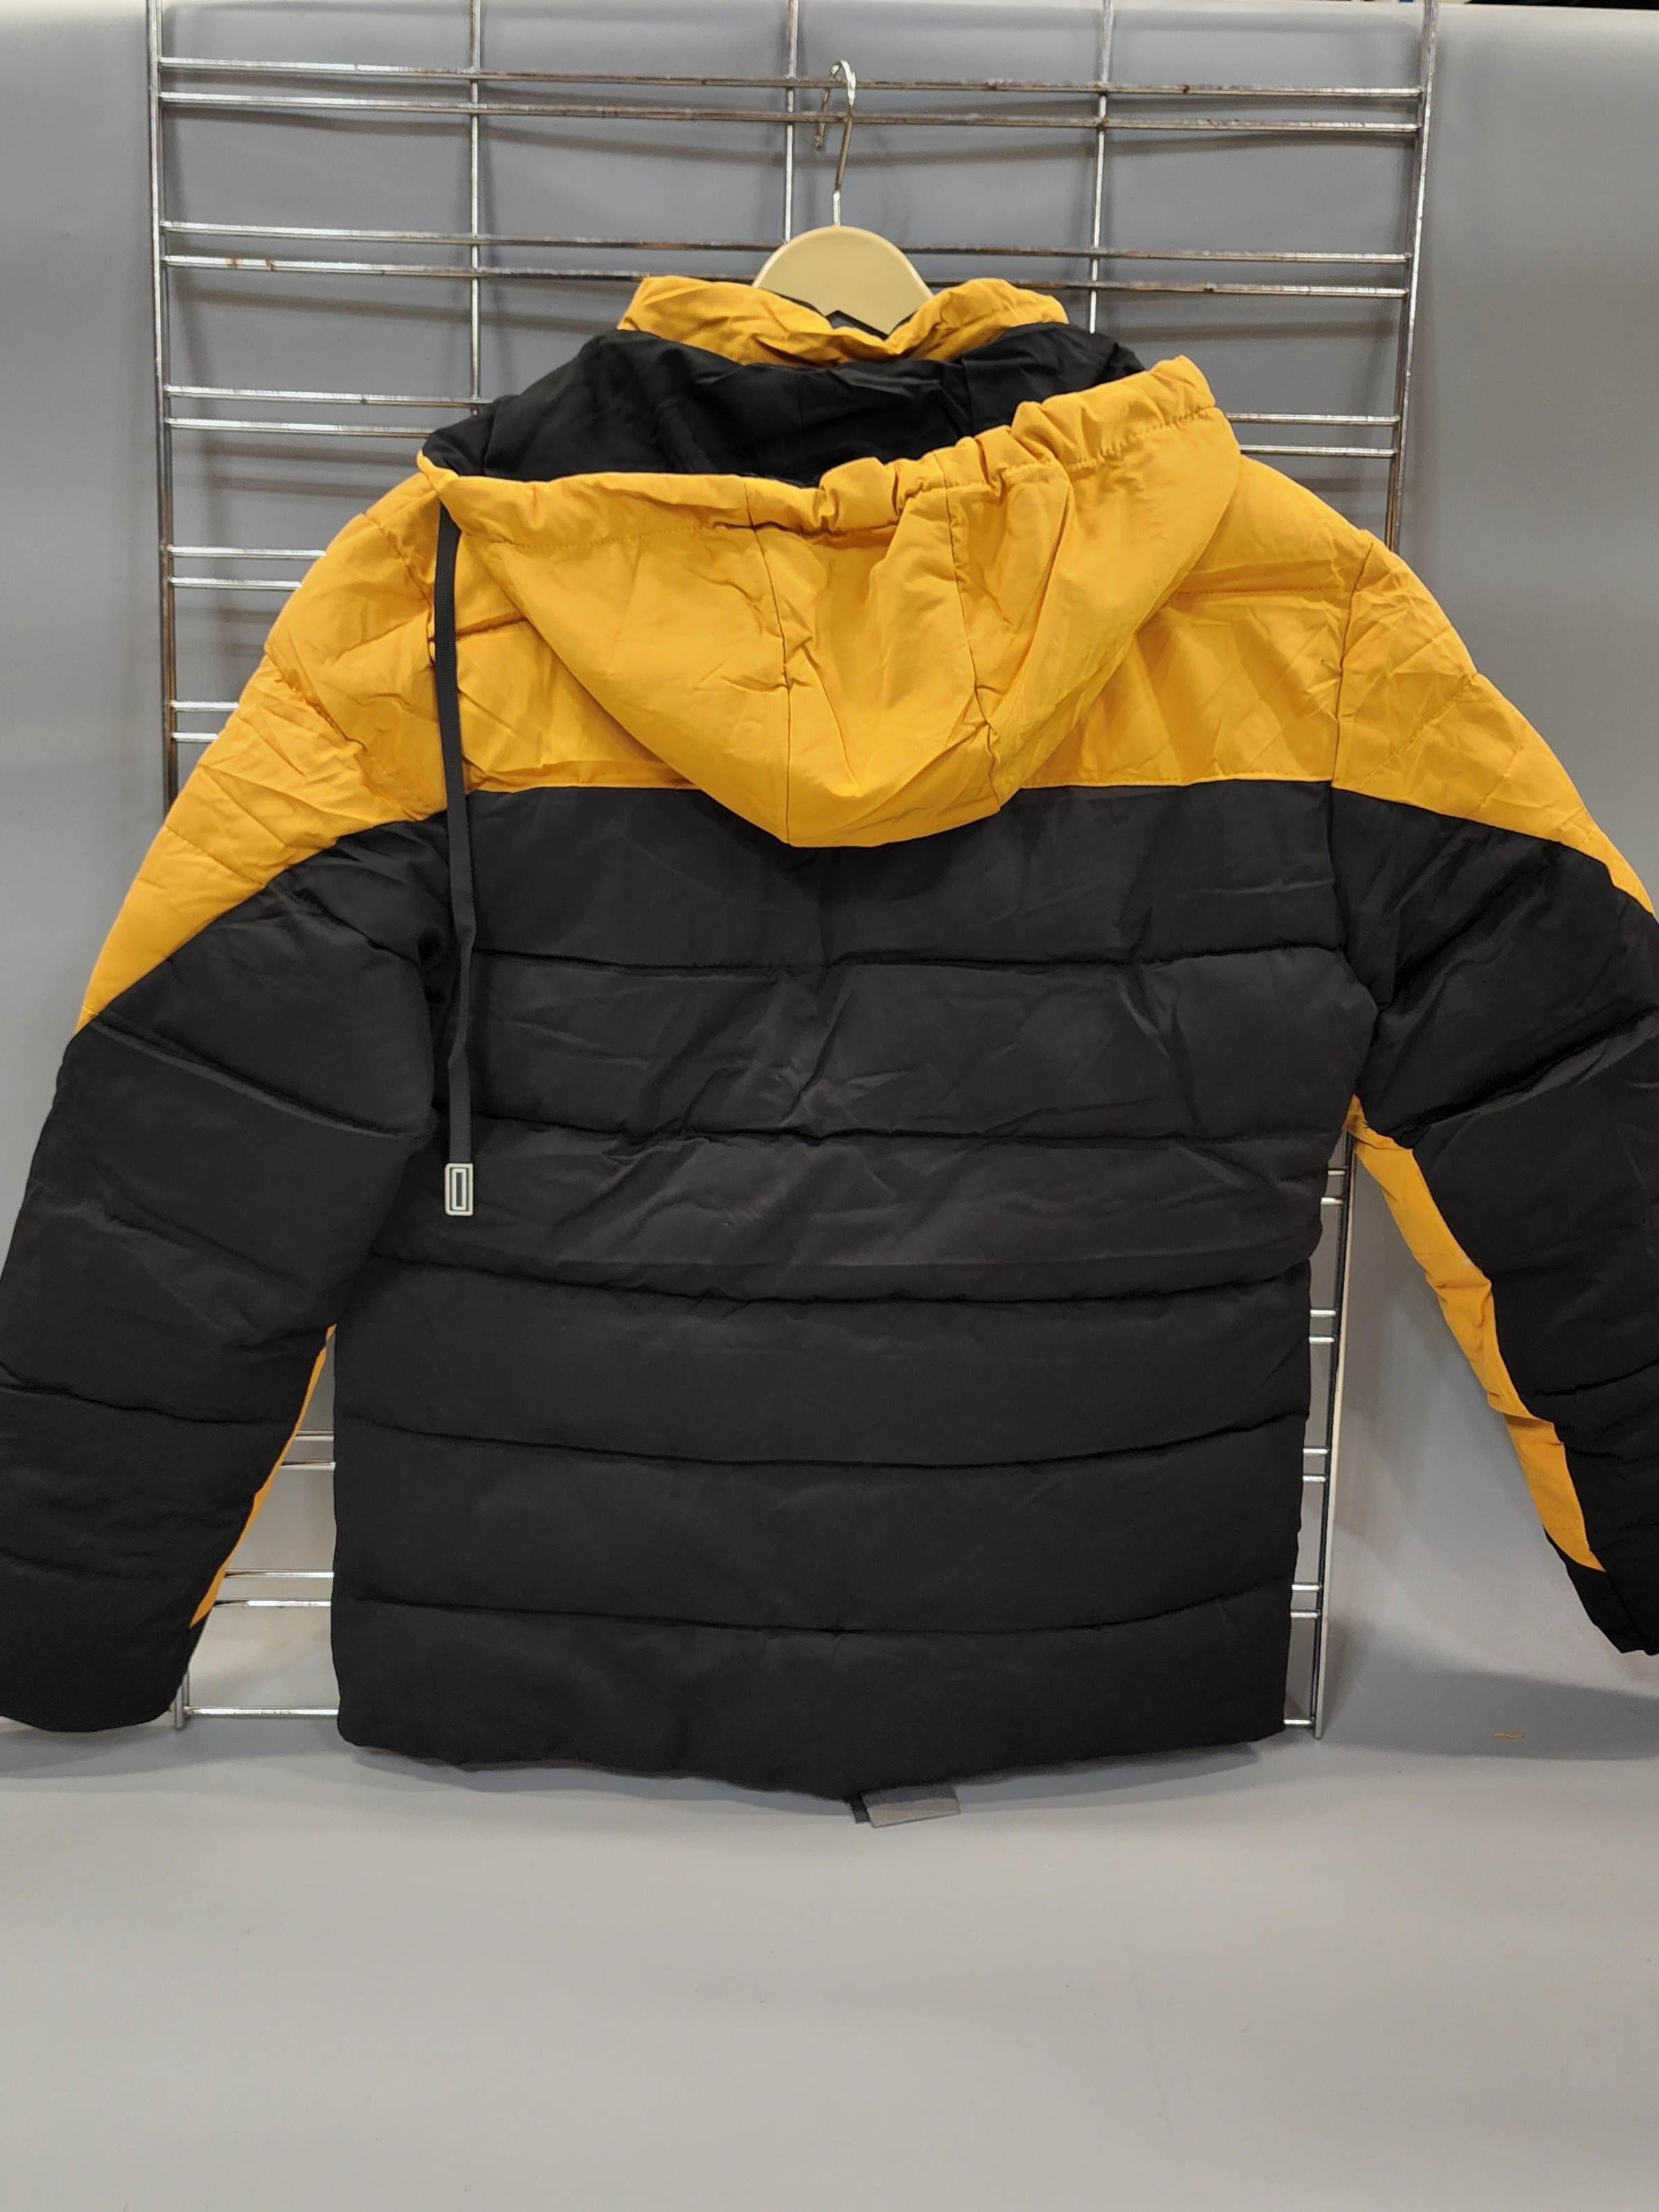 Yellow Bomber Jacket - Maha fashions -  